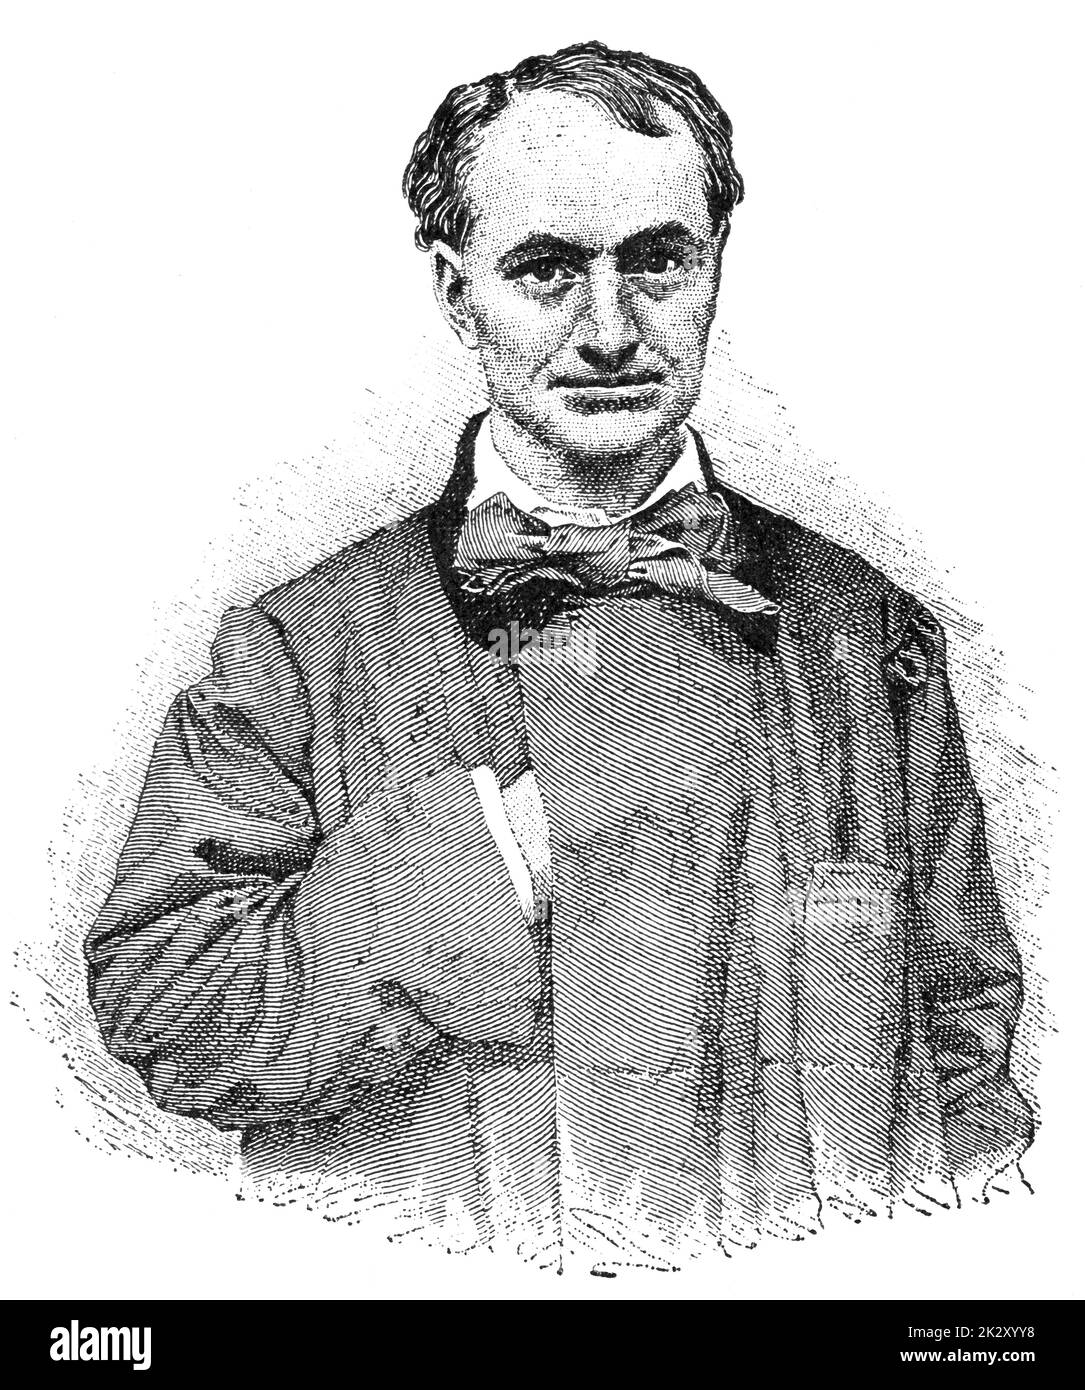 Ritratto di Charles Pierre Baudelaire - poeta francese, saggista, critico d'arte, e uno dei primi traduttori di Edgar Allan PoE. Illustrazione del 19 ° secolo. Sfondo bianco. Foto Stock